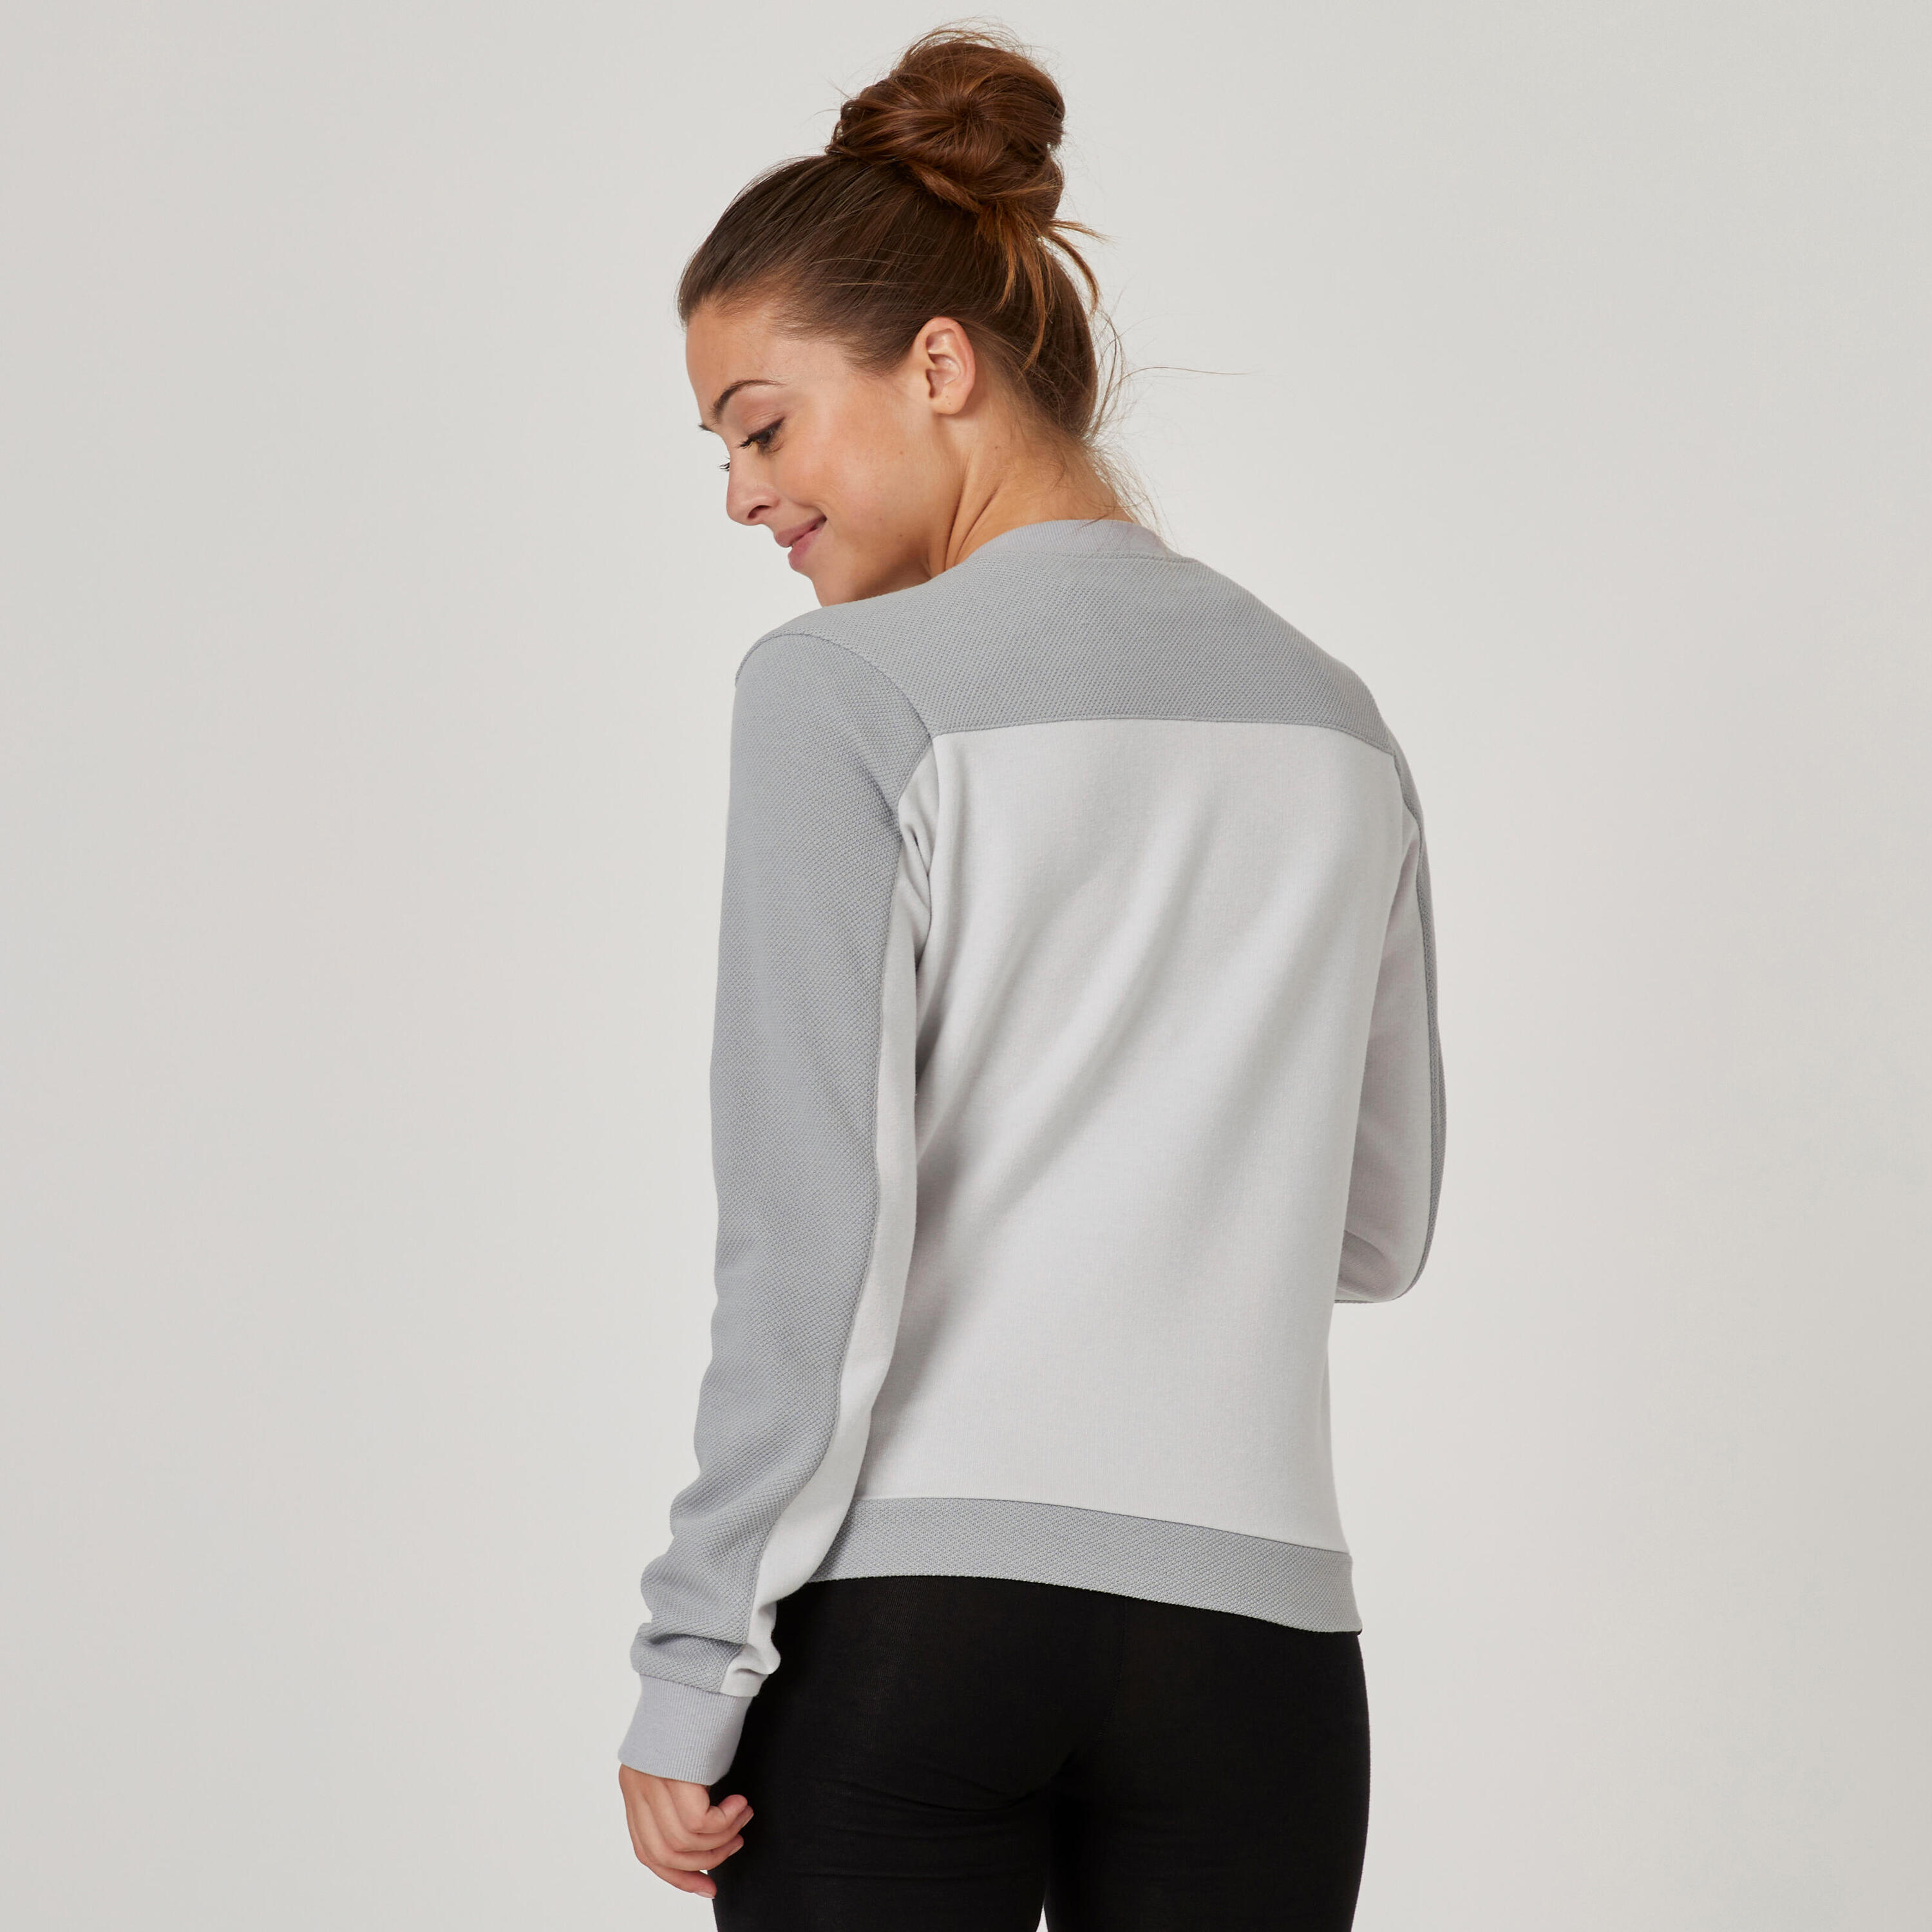 Women's Zip-Up Fitness Sweatshirt 520 - Light Grey 2/7